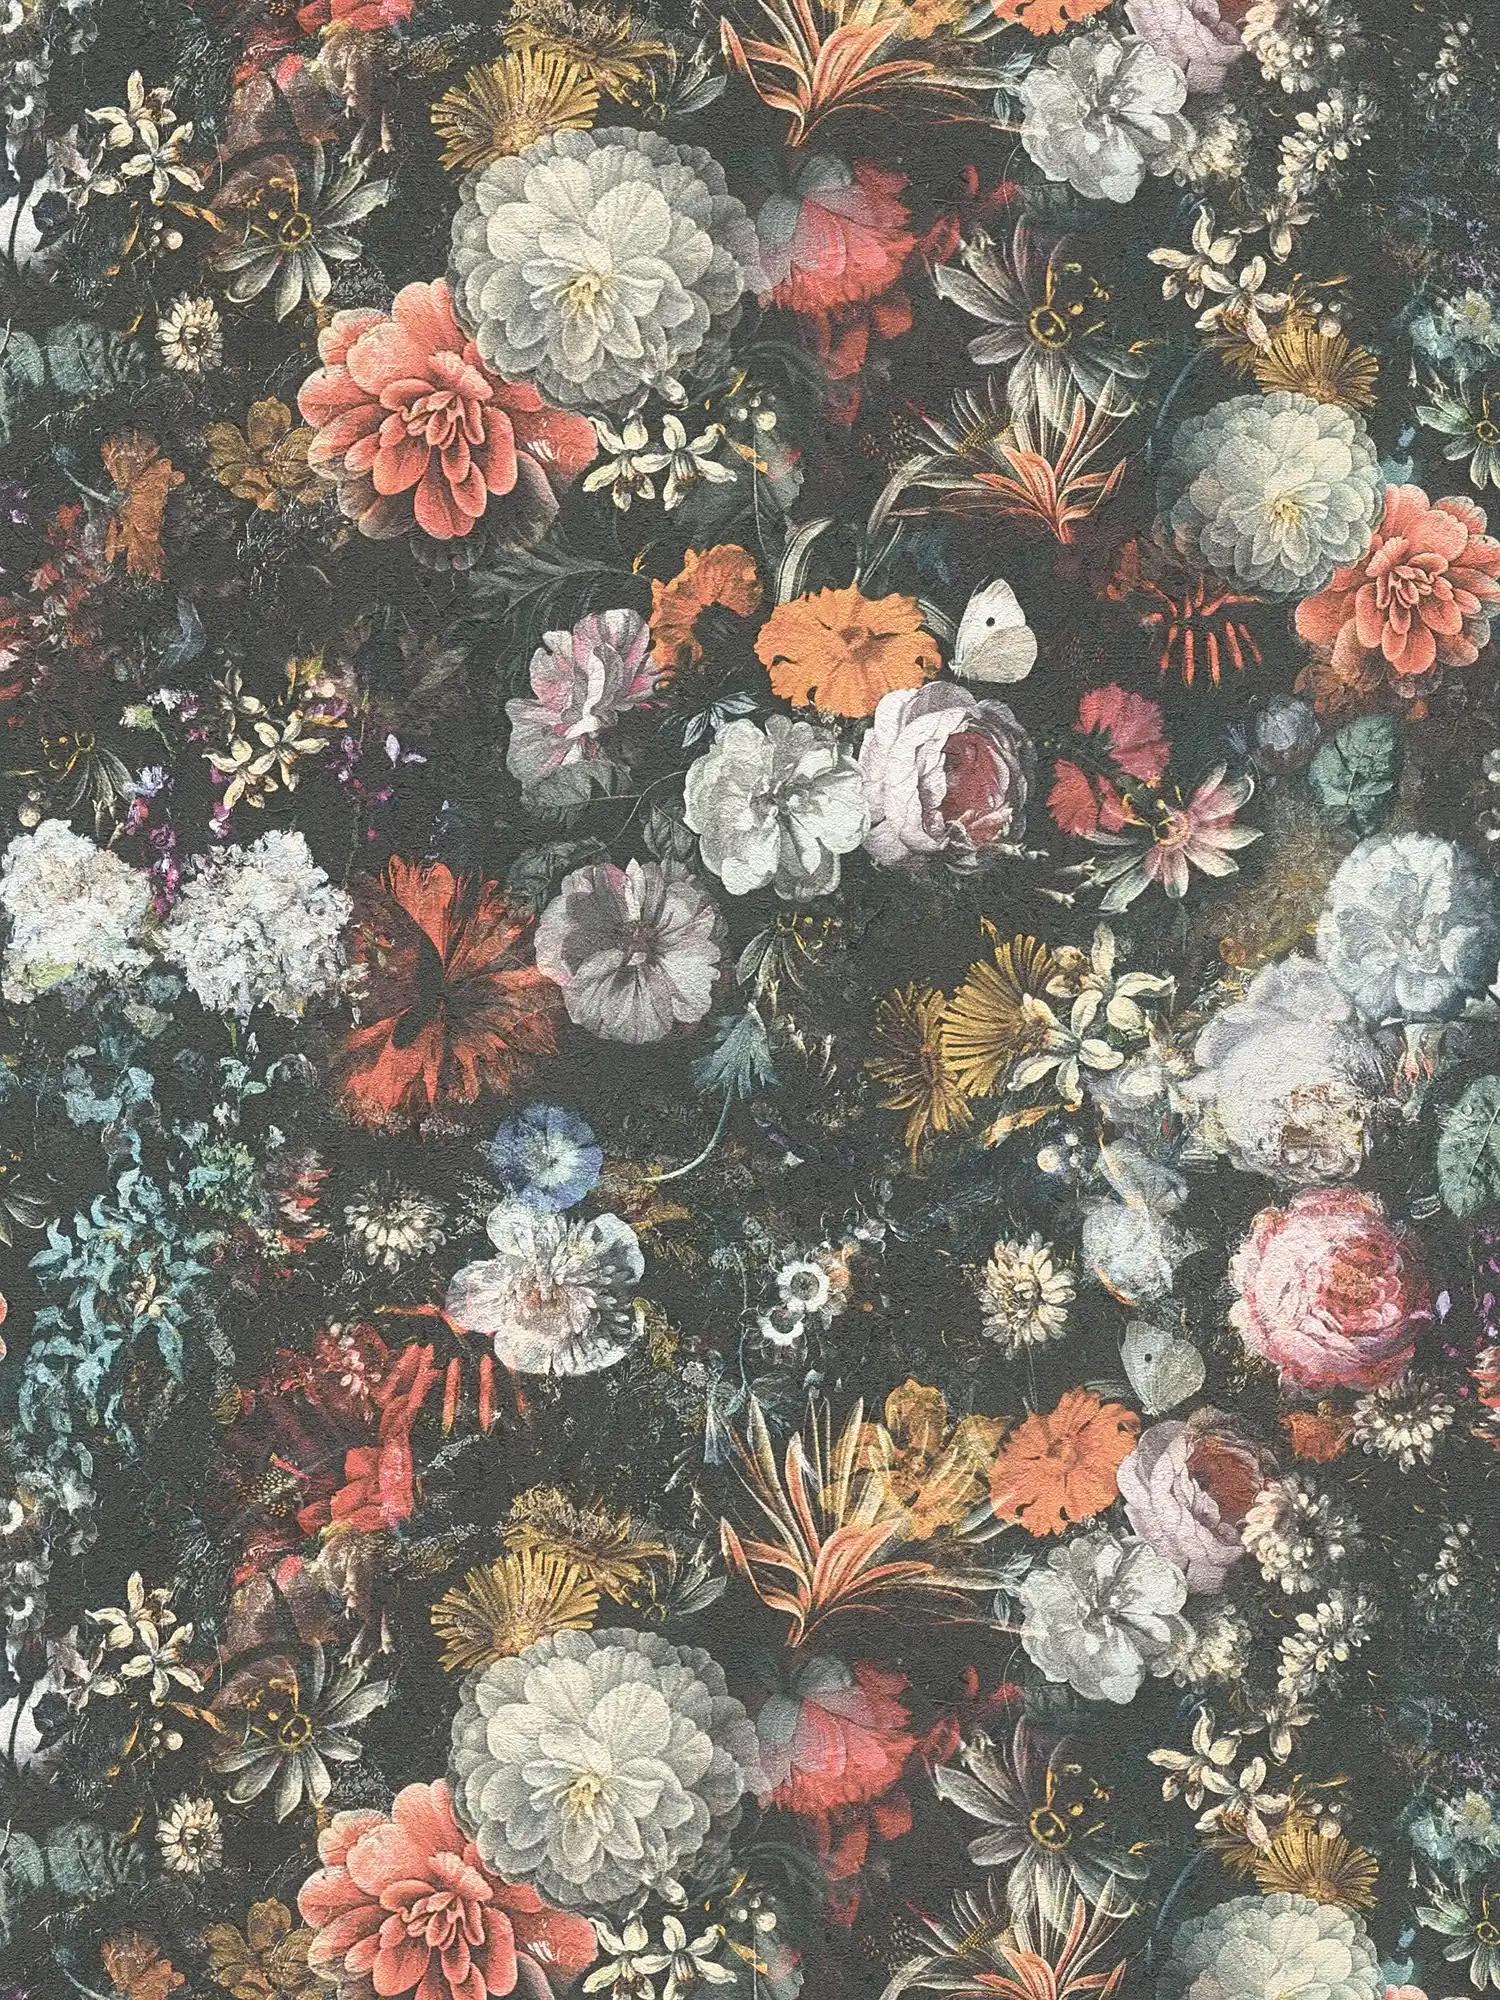         Bloemenbehang vintage ontwerp met rozen - kleurrijk, grijs, oranje
    